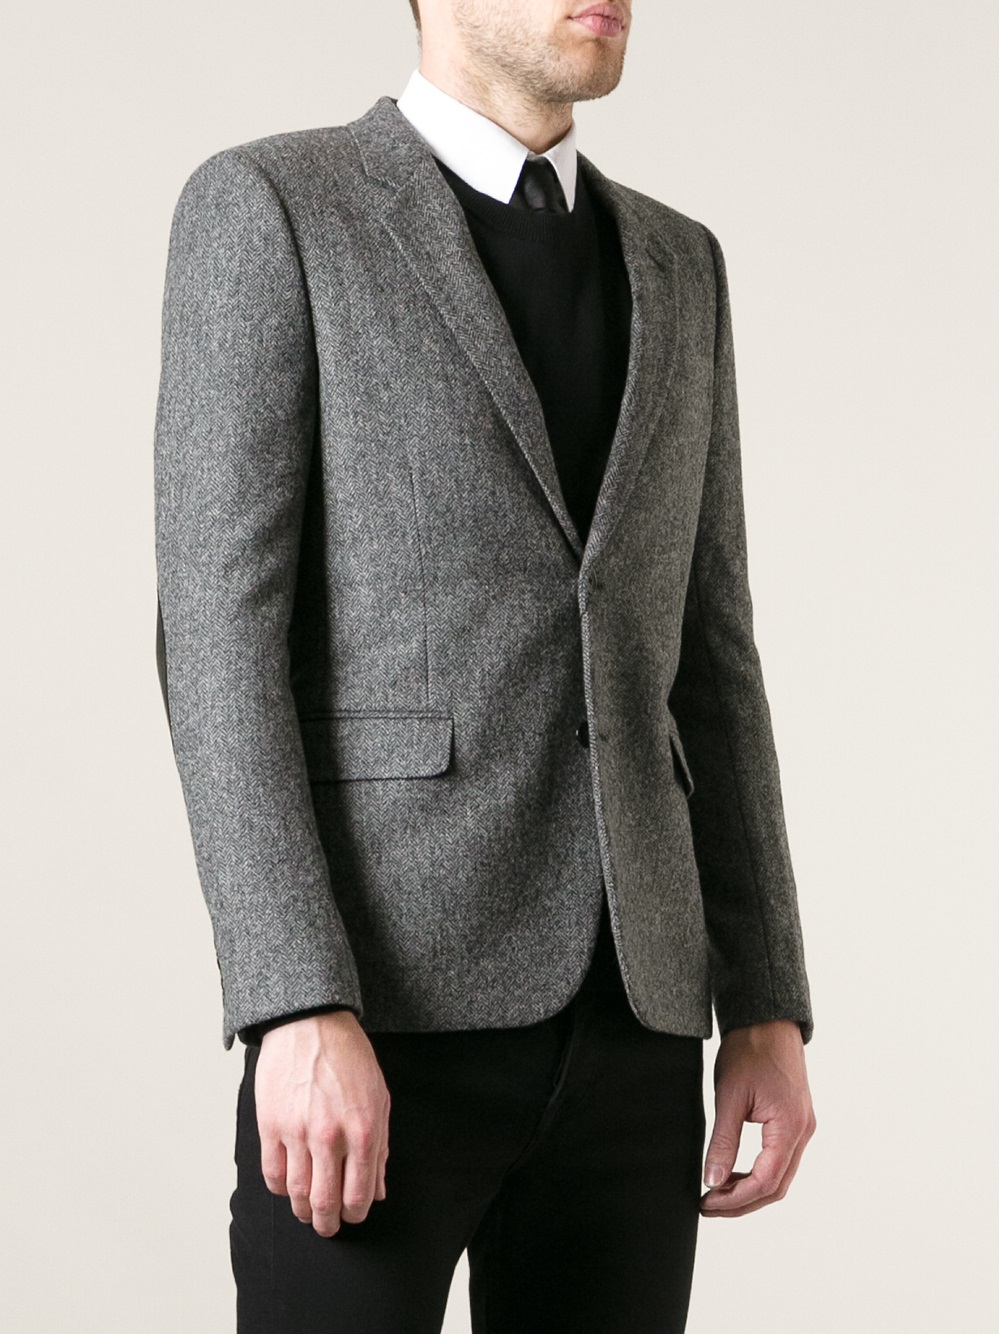 Saint Laurent Herringbone Tweed Blazer in Grey (Gray) for Men - Lyst